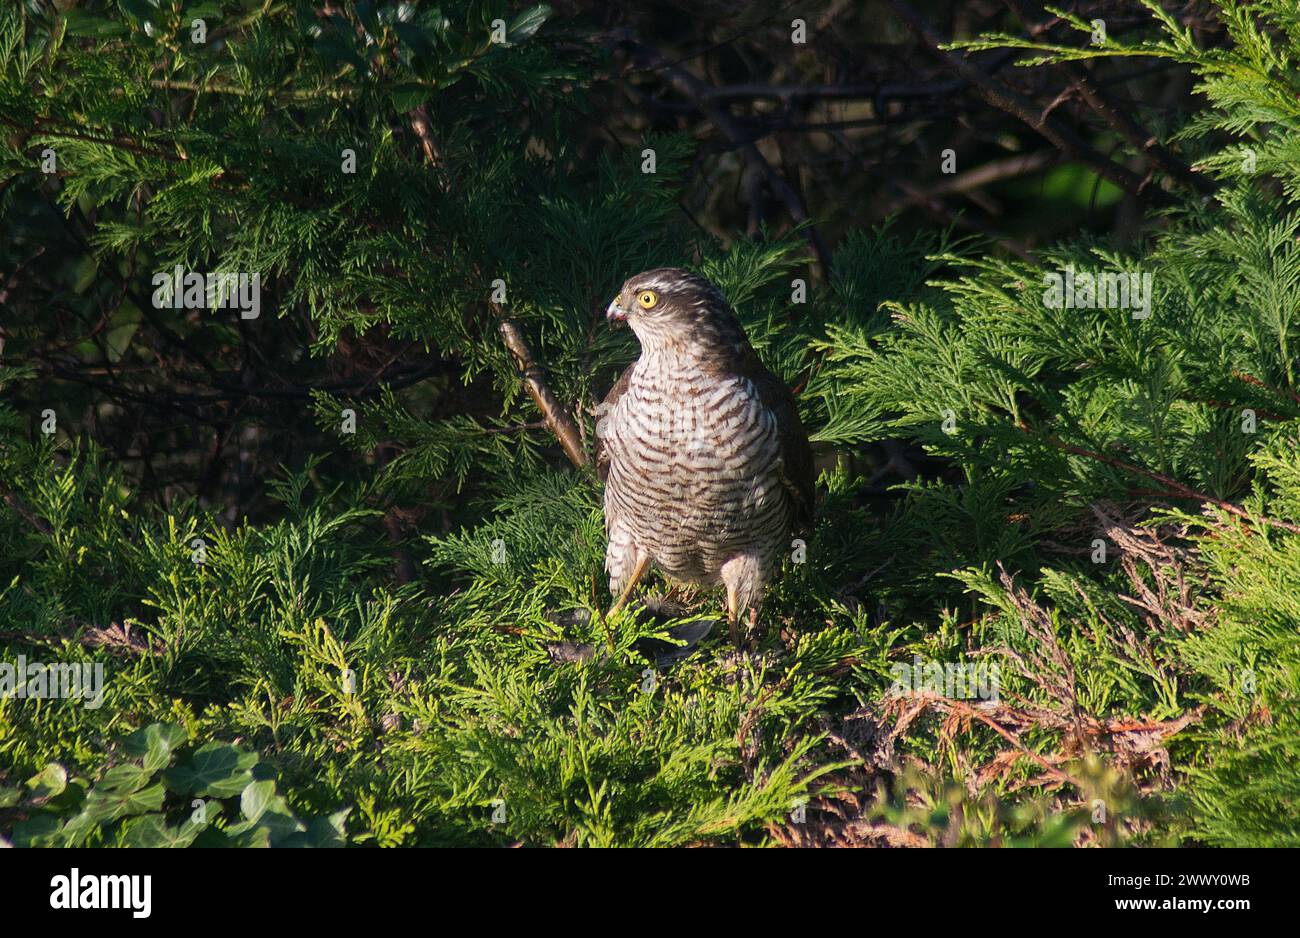 Sparrowhawk mit Tötung, der in Nadelbäumen im direkten Sonnenlicht thront und deutlich Kopf und Gefieder in gutem Licht zeigt Stockfoto